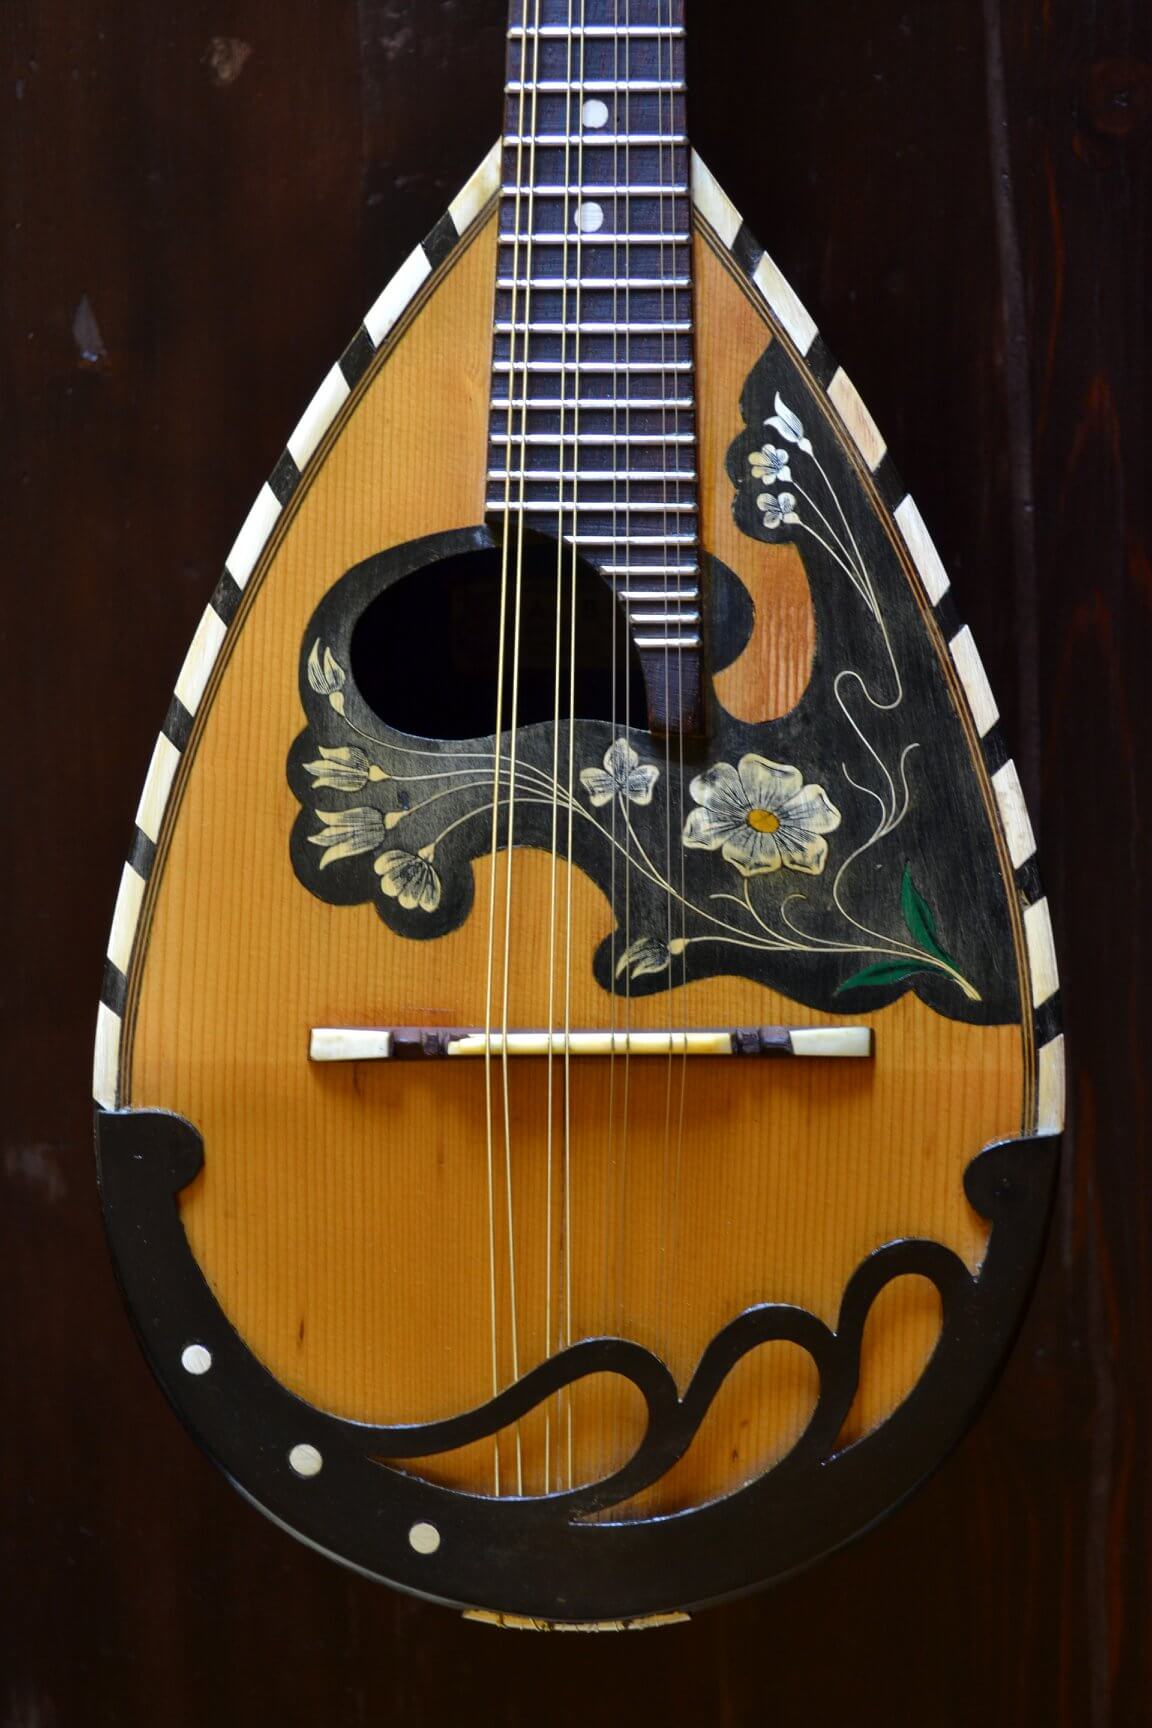 liuteria bona - riparazione mandolini e strumenti etnici